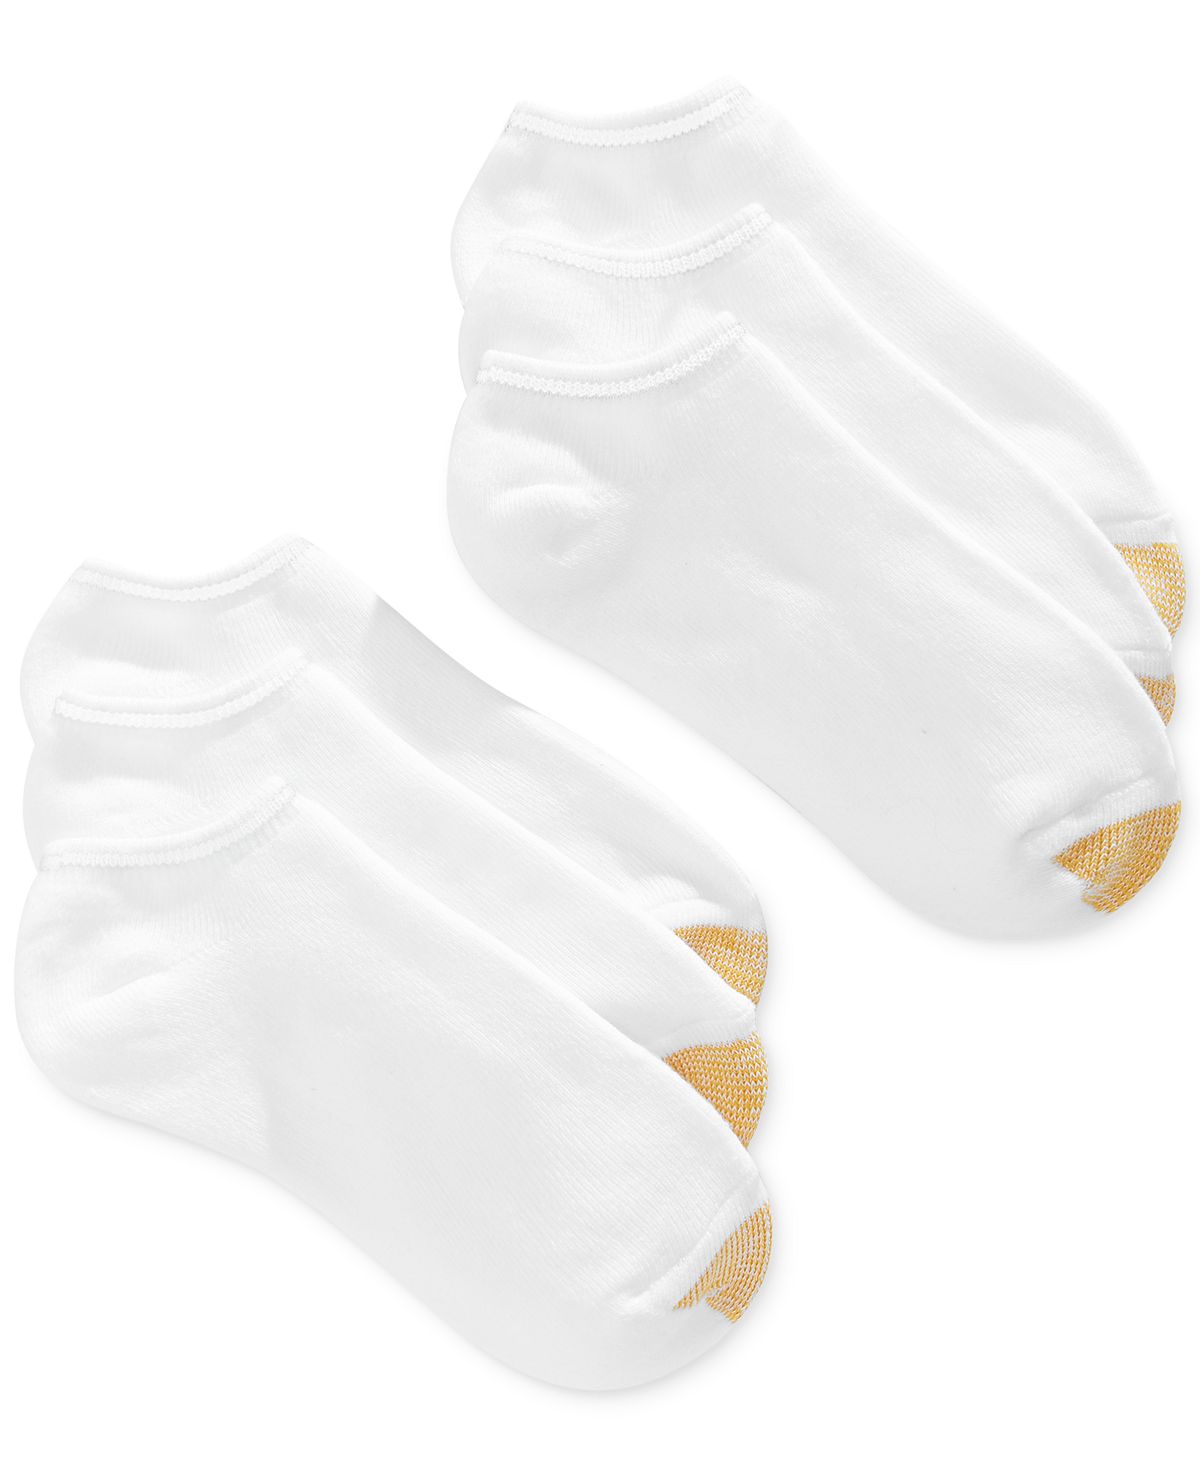 женские повседневные носки с подушечкой до щиколотки 6 пар также доступны в расширенных размерах gold toe Женские повседневные носки с подушечкой до щиколотки (6 пар), также доступны в расширенных размерах Gold Toe, белый